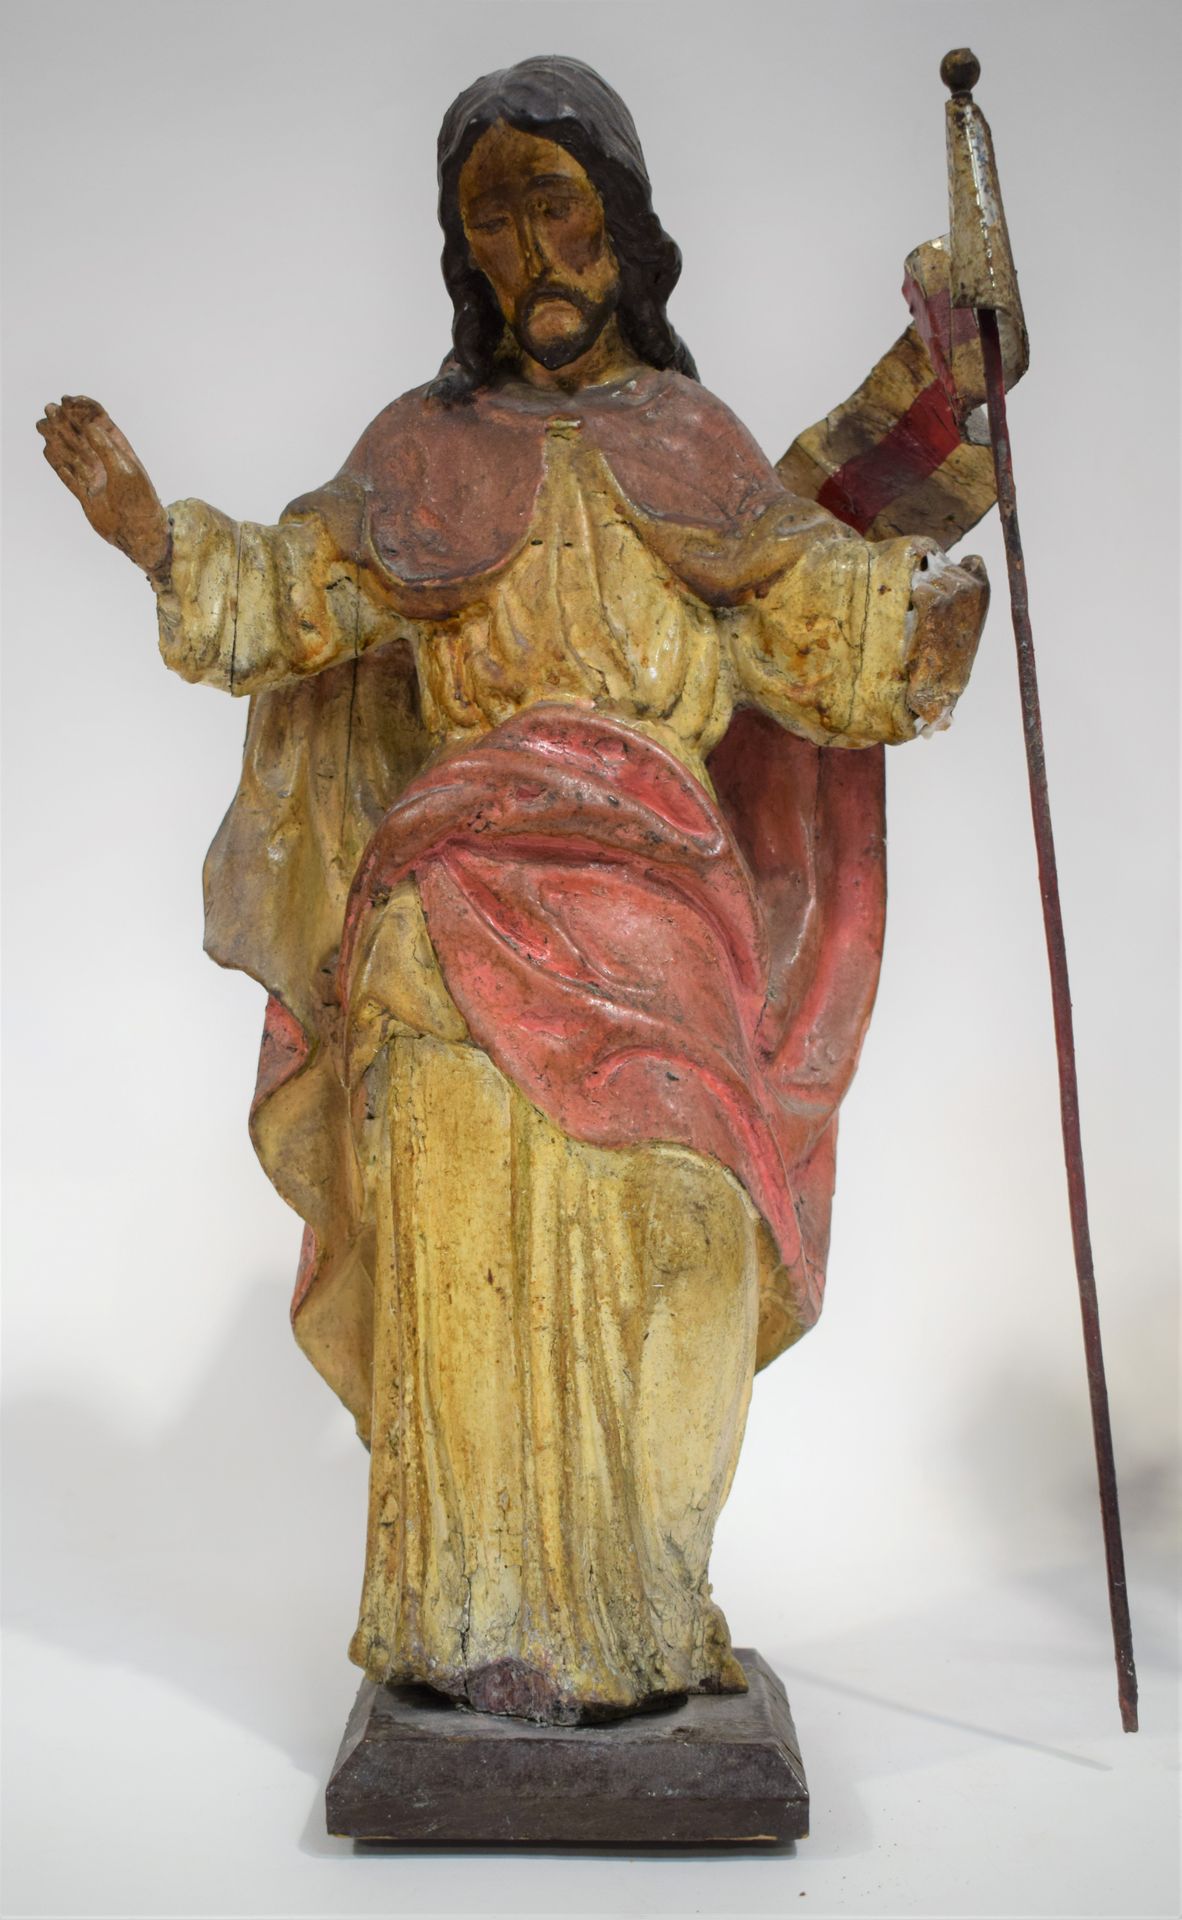 Null CHRIST de la Résurrection

Sculpture polychrome en bois

Hauteur : 43 cm

|&hellip;